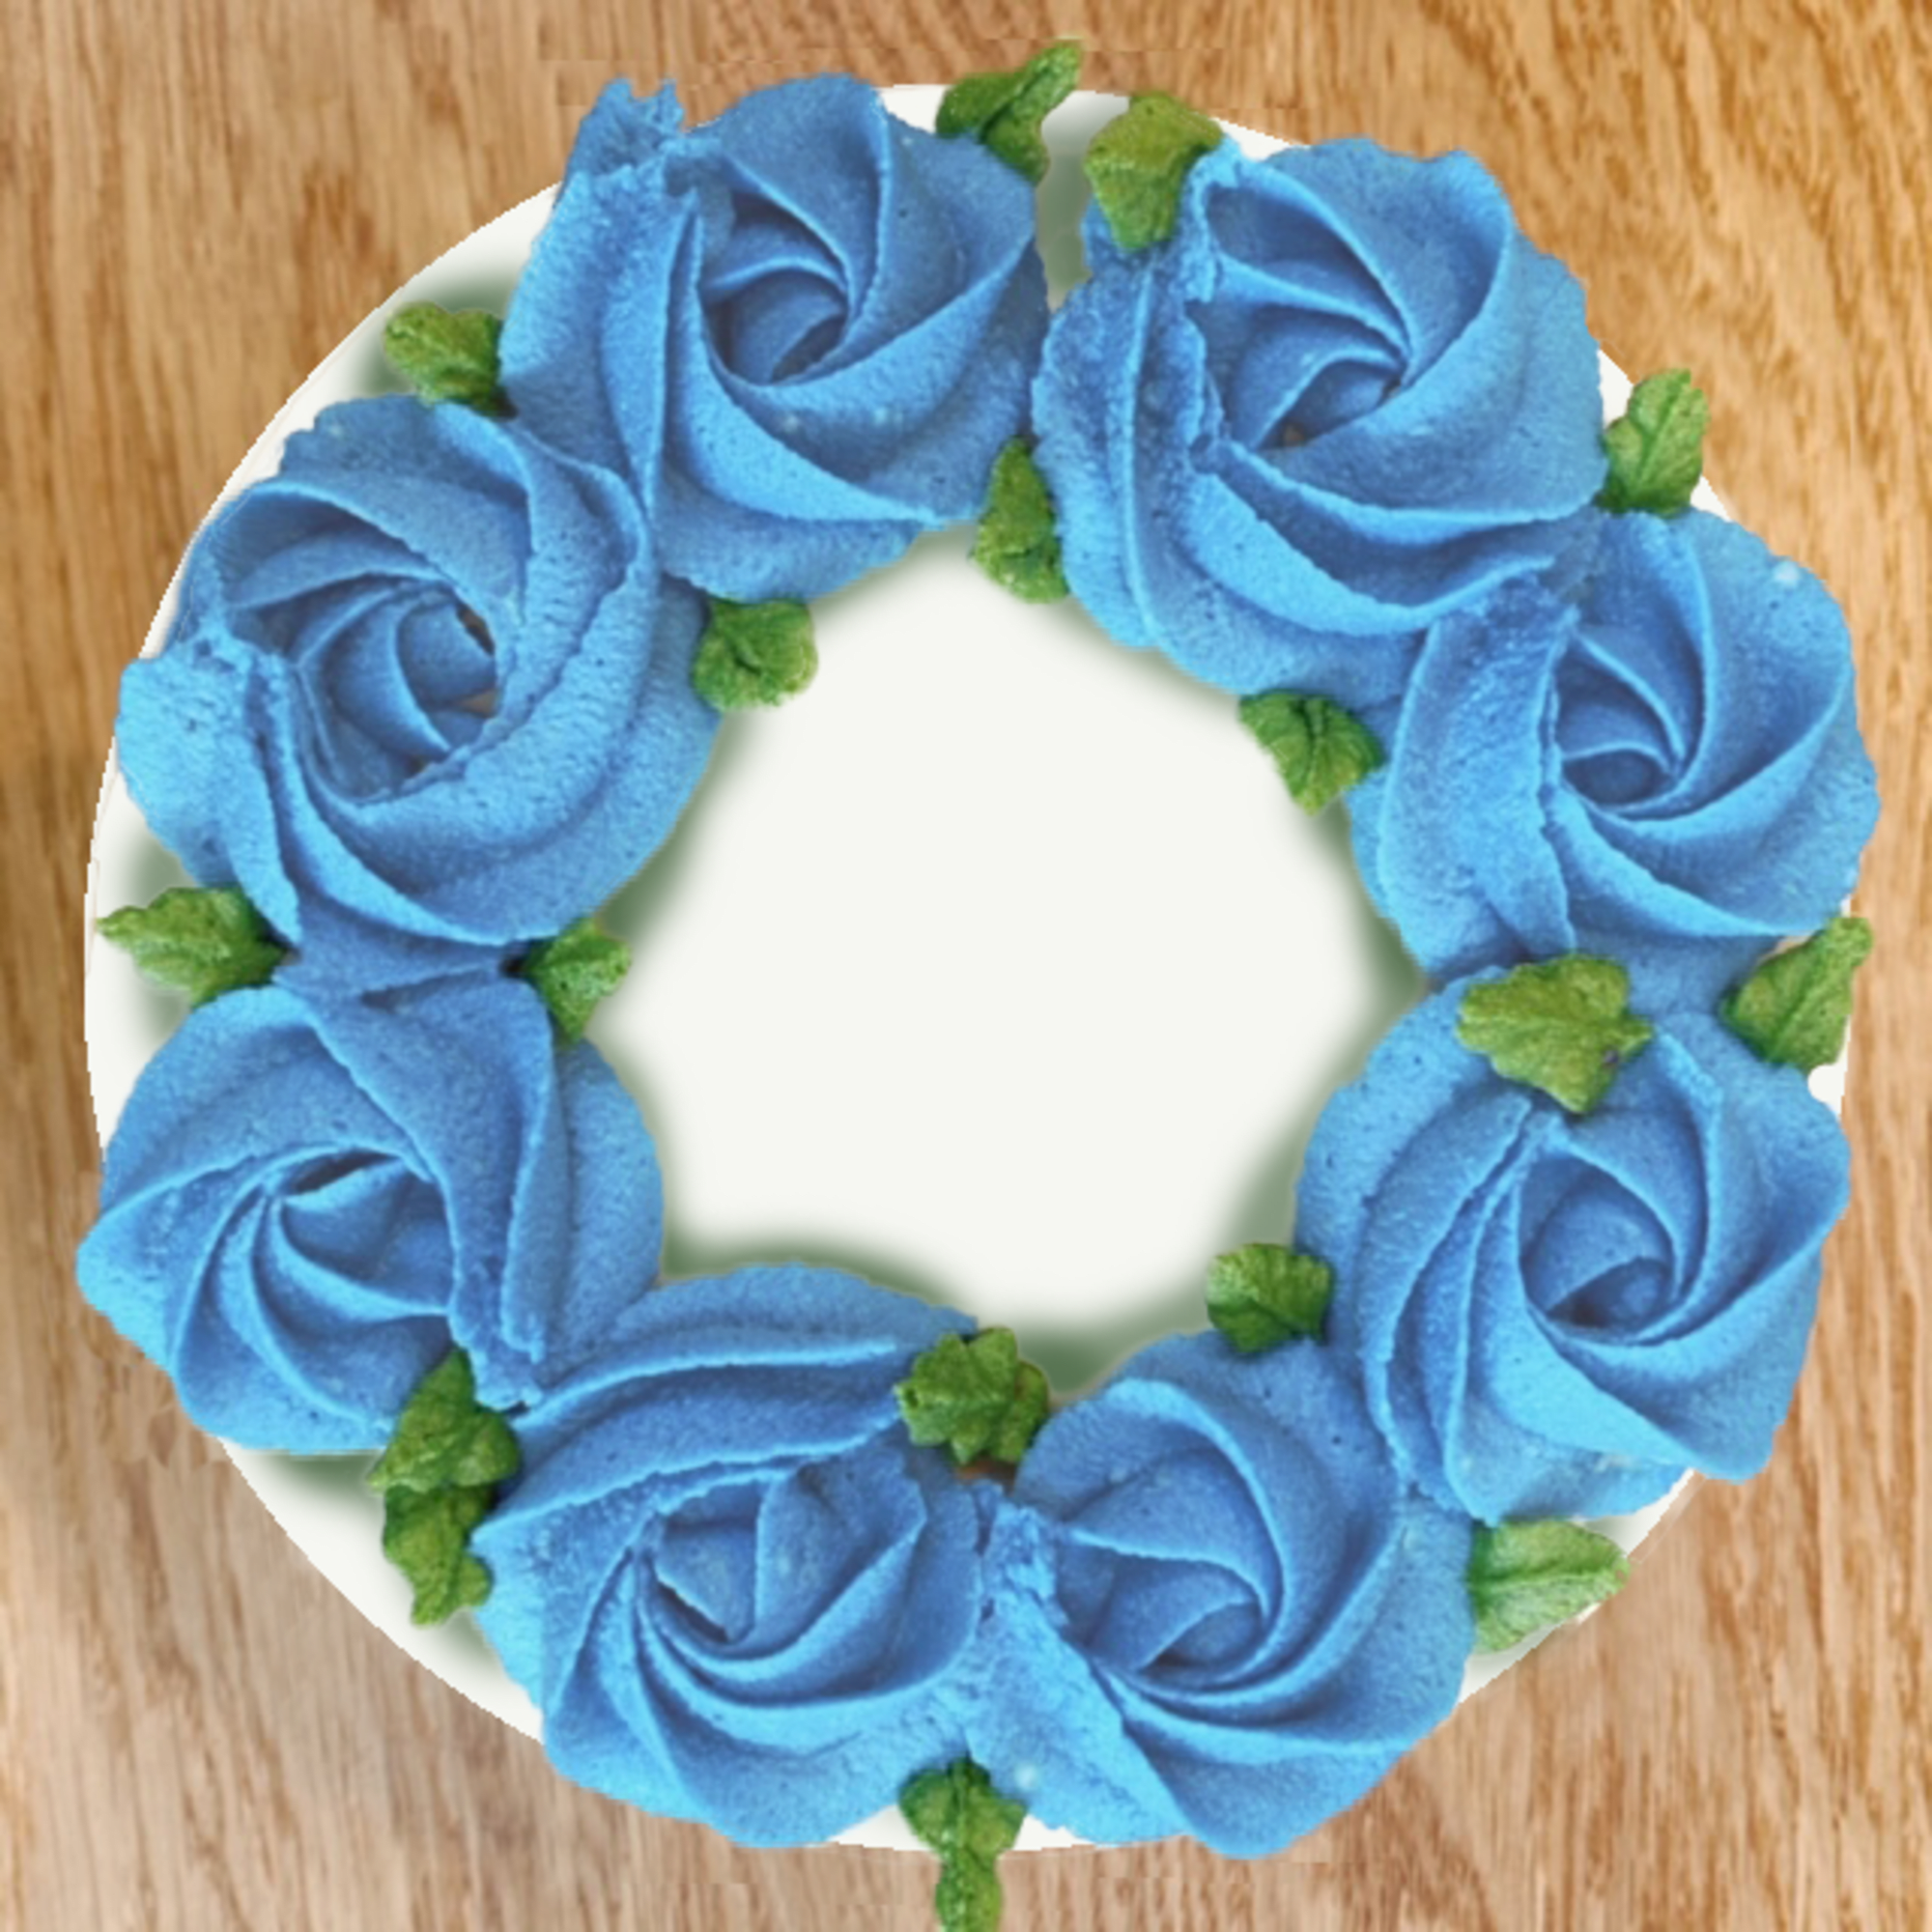 味が選べるフラワーデコシリーズ 青い薔薇のケーキ ５号 Raw Raw ローアンドロー のプレゼント ギフト通販 Tanp タンプ